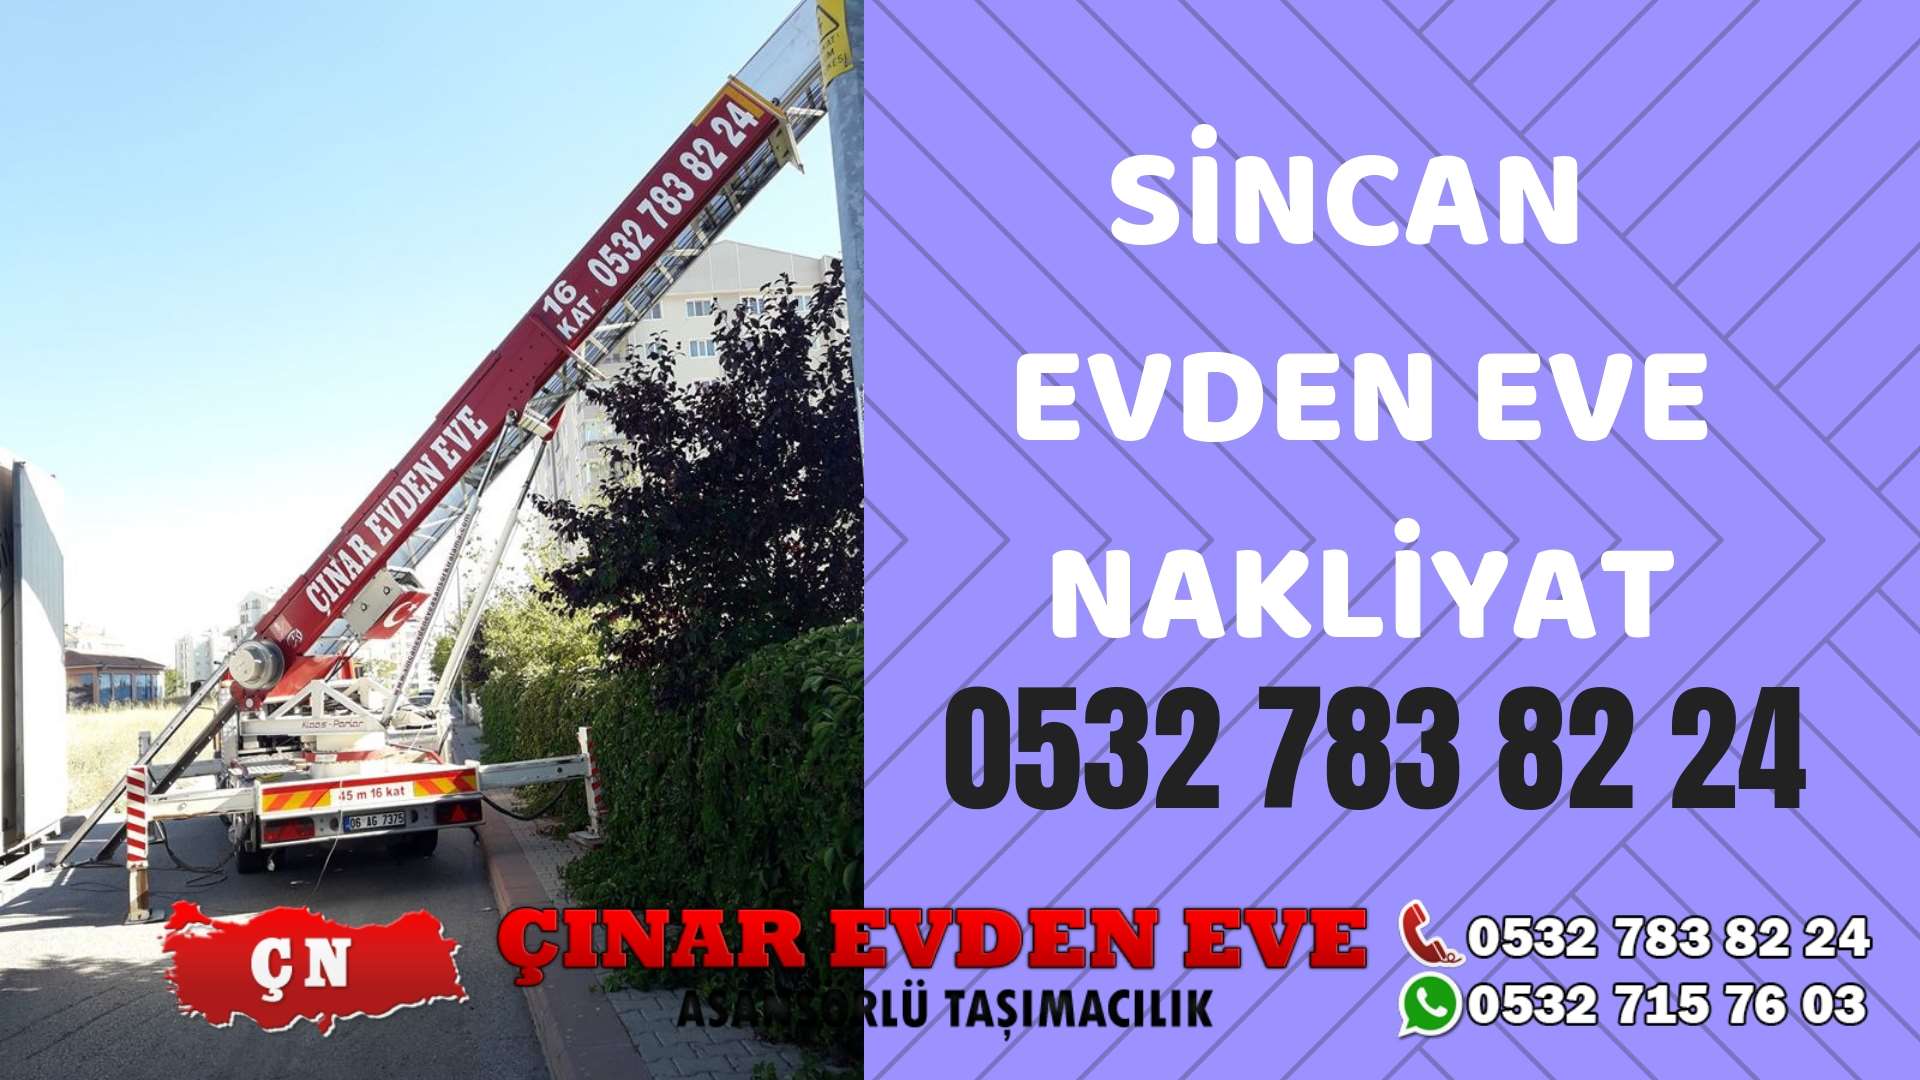 Ankara Şereflikoçhisar Sincan evden eve asansörlü nakliyat en ucuz nakliye 0532 715 76 03